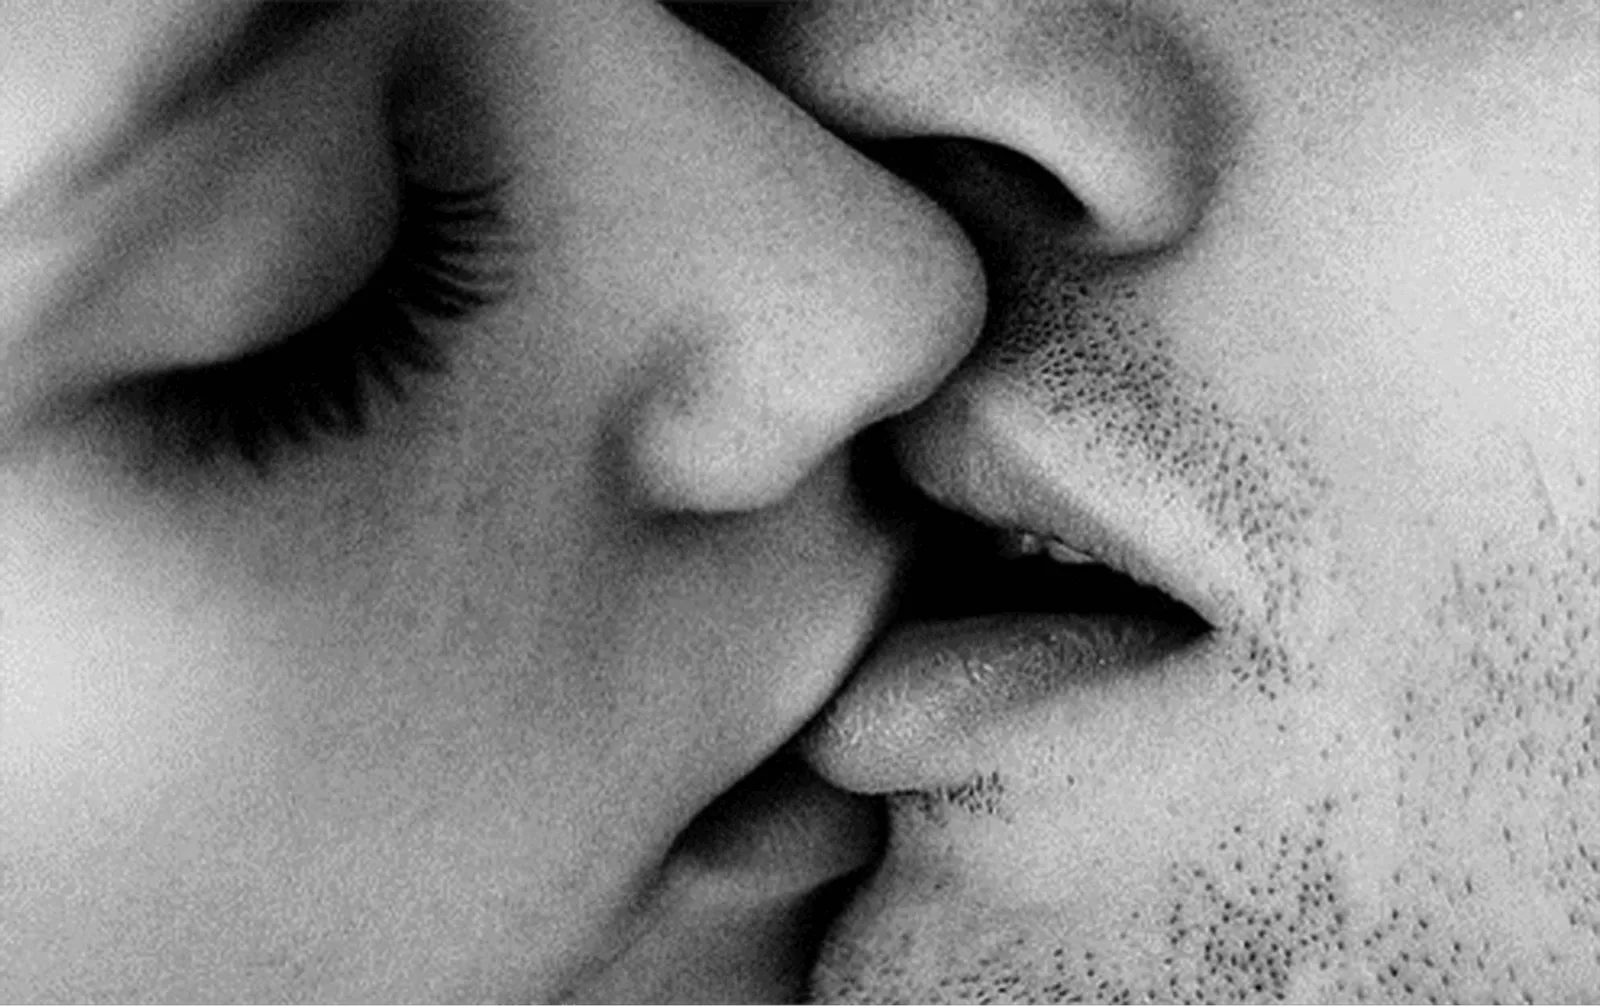 17 Tipe Ciuman dan Maknanya, Nggak Banyak yang Jago Tipe Nomor 4!